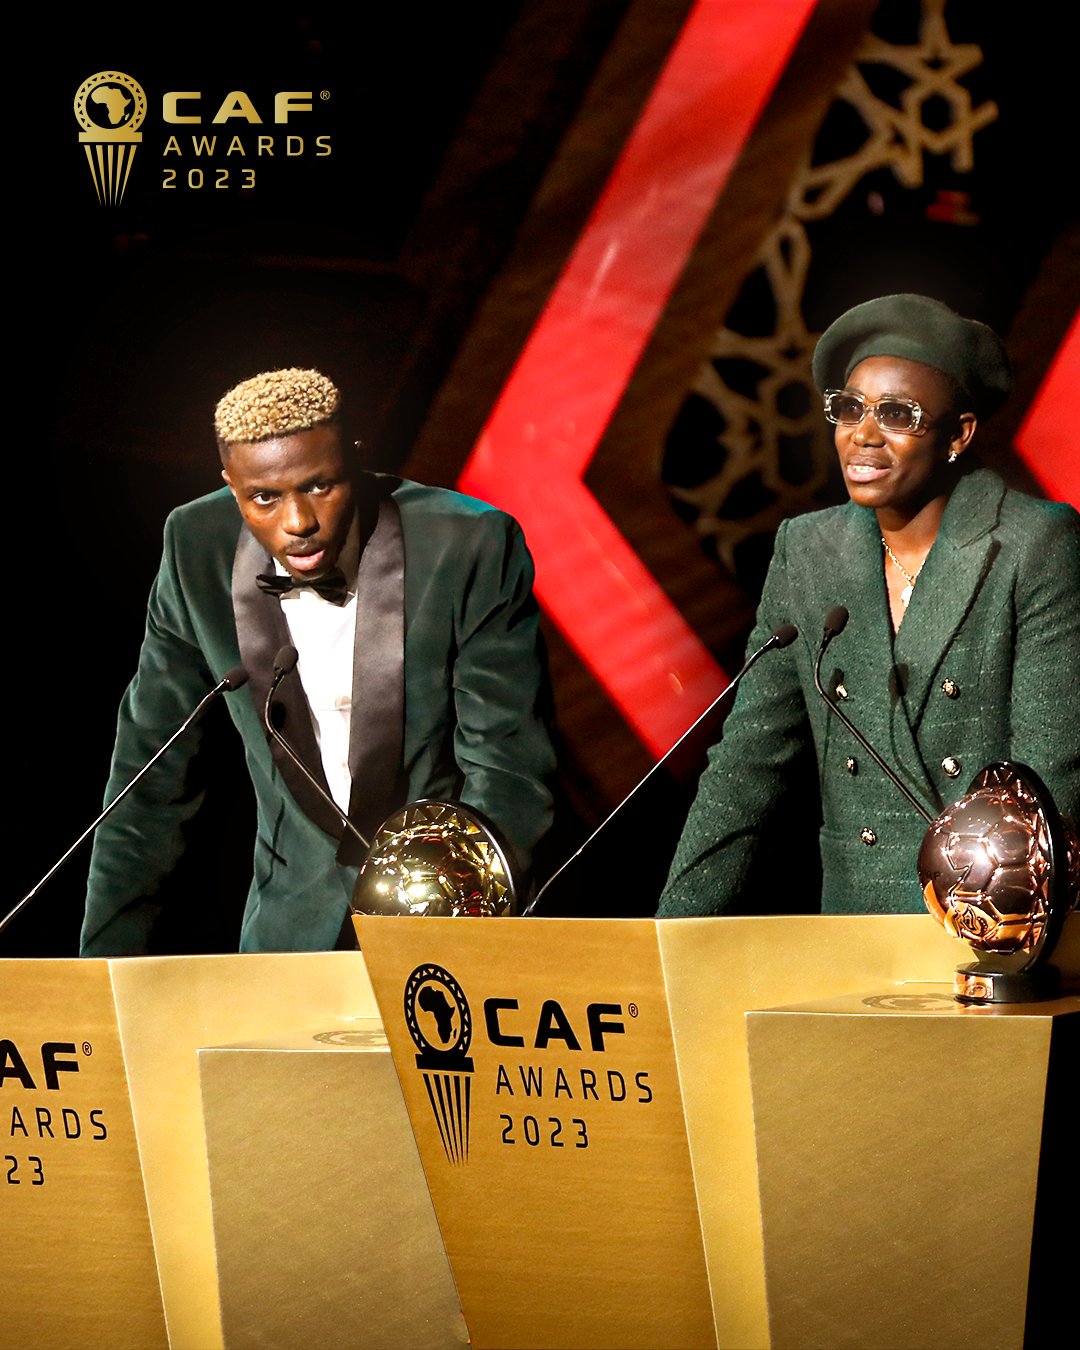 CAF Awards 2023 : Les "Eagles" s’envolent bien haut